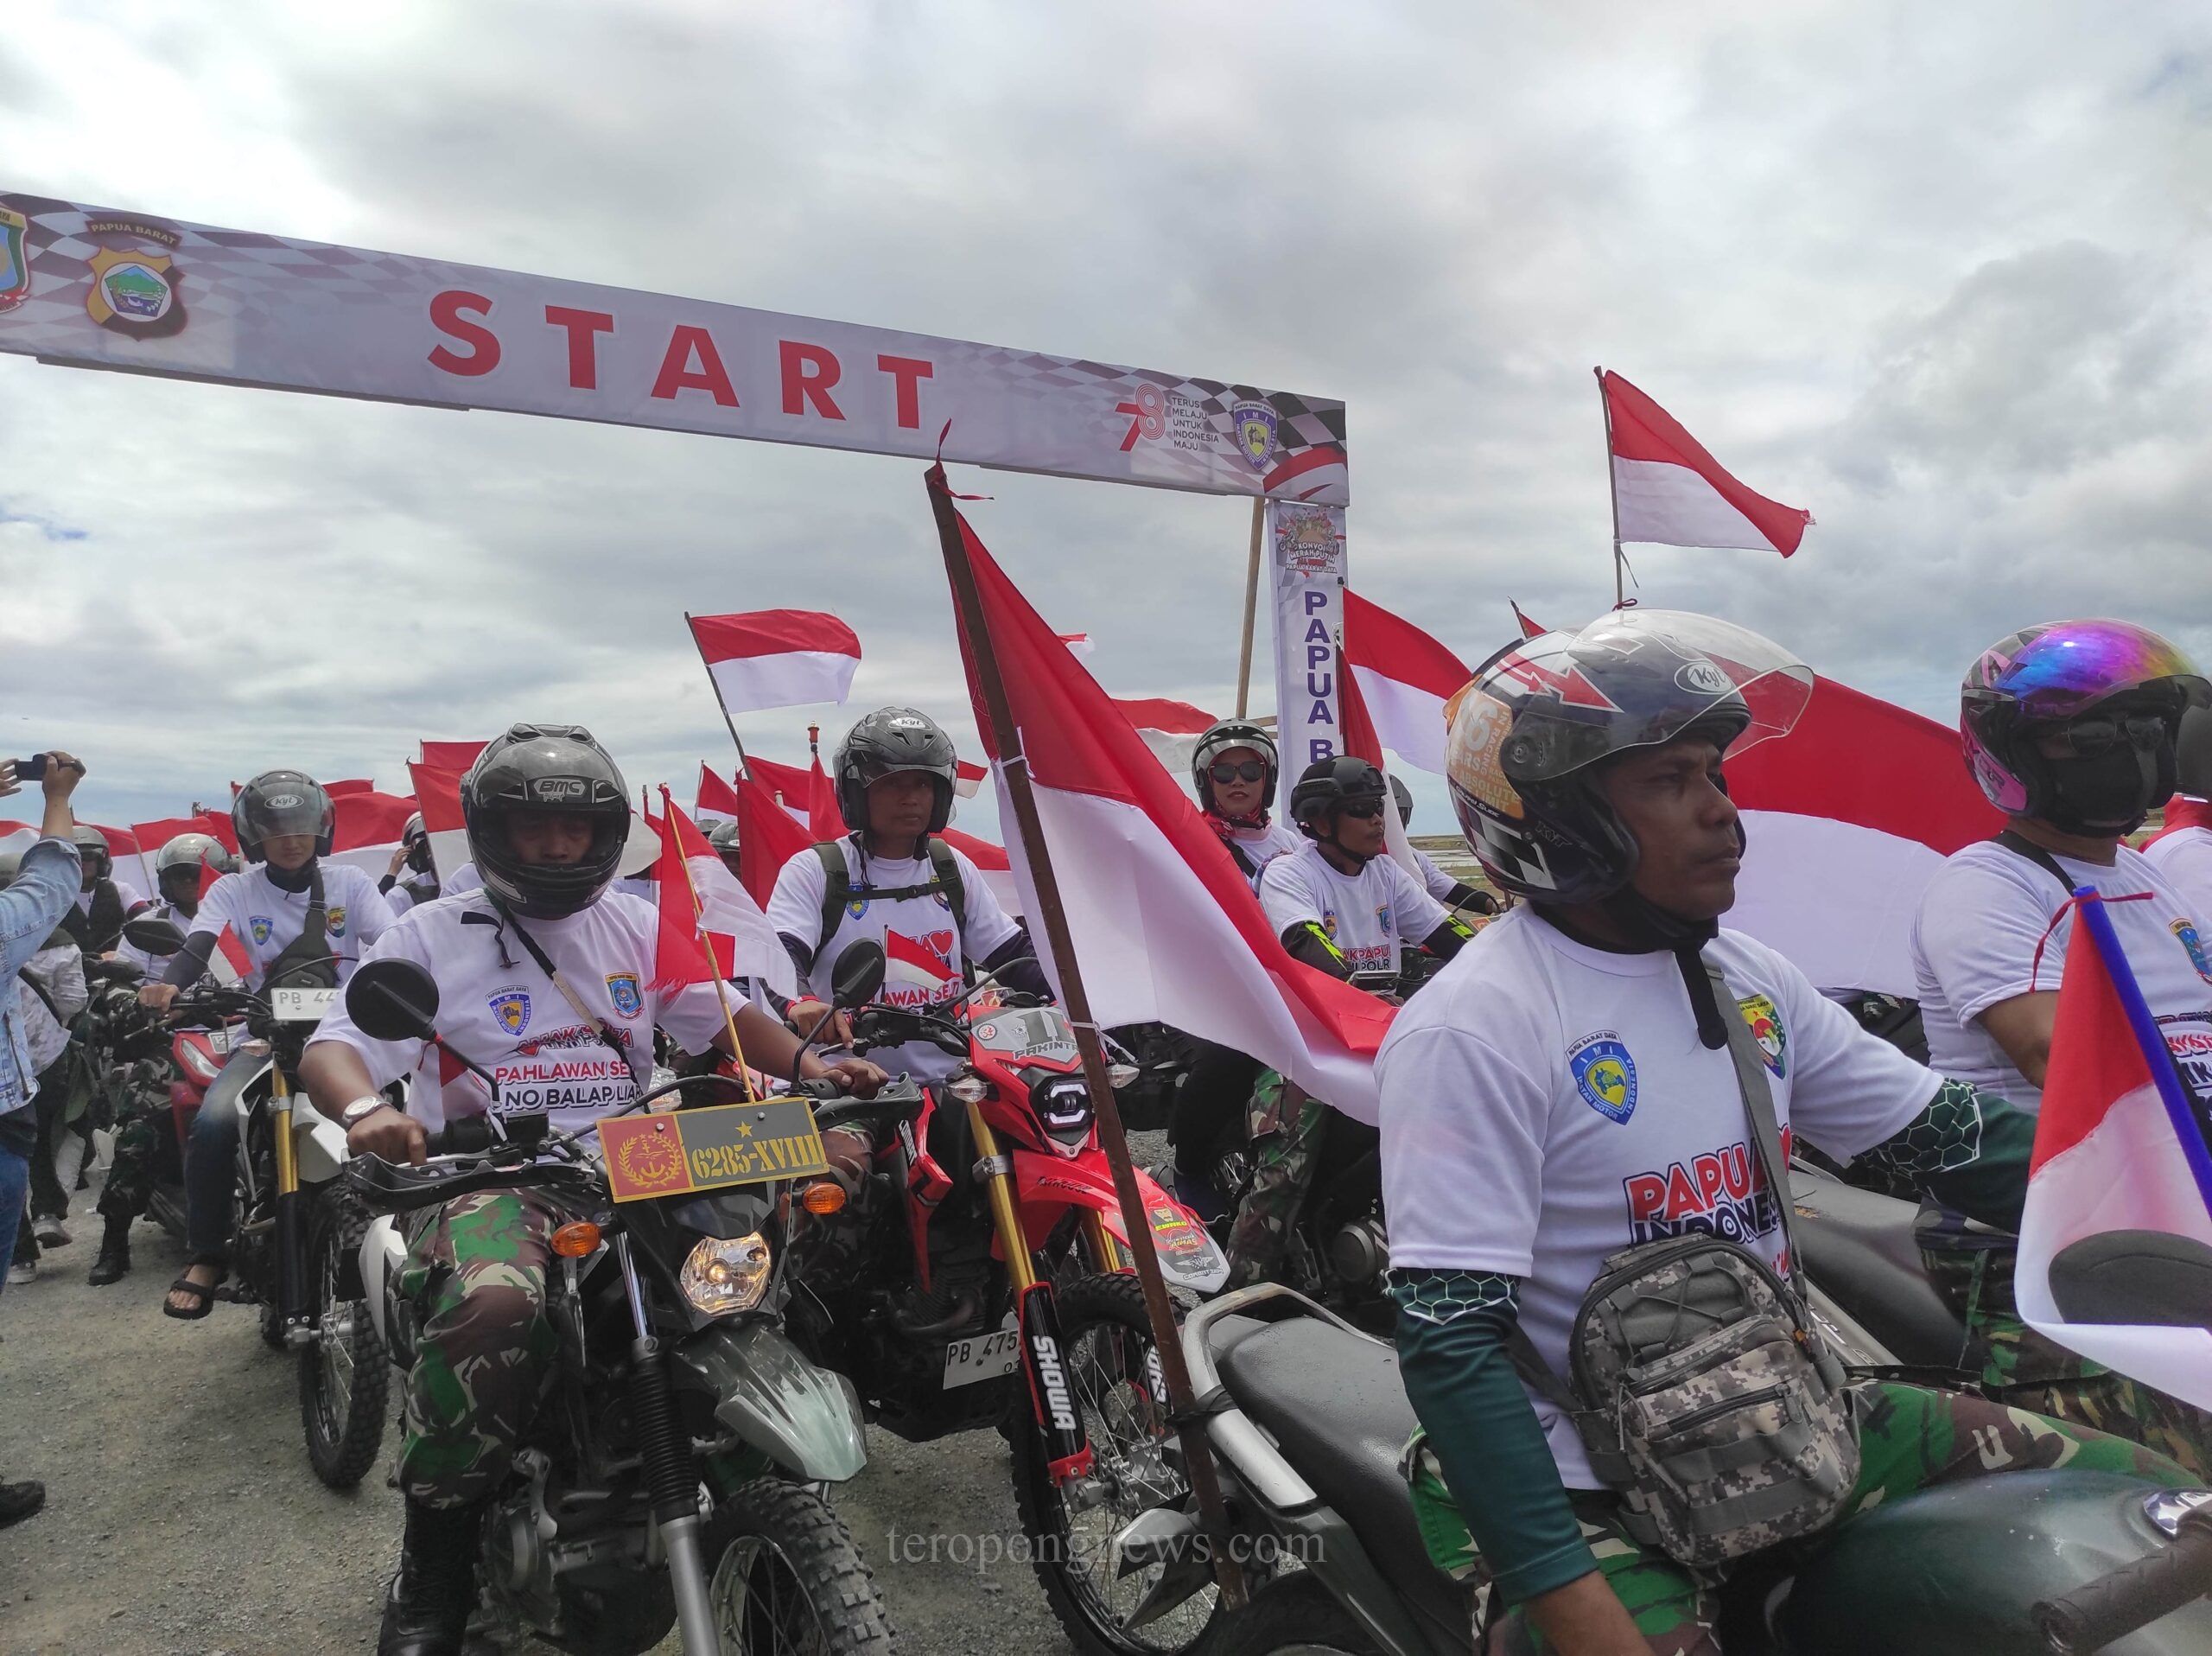 6.200 Biker Ramaikan Konvoi Merah Putih di Sorong